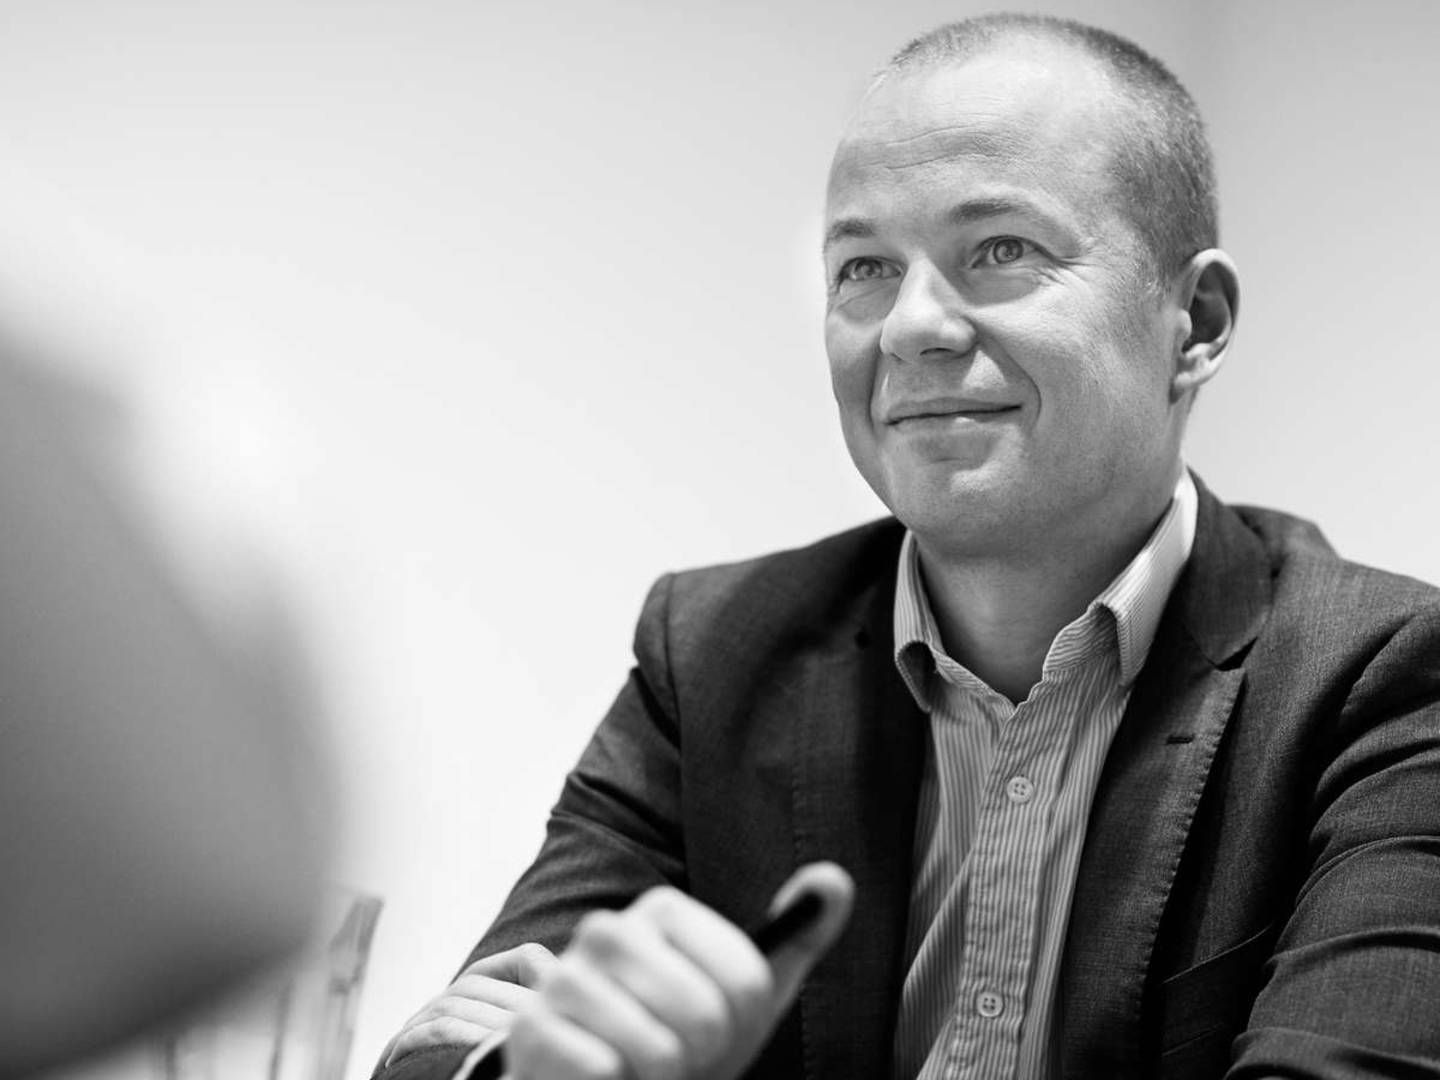 "Vi er ivrige efter at understøtte visionære stiftere," fortæller Mikkel Hesselgren, investeringsdirektør i Nikolaj Deichmanns familiekontor. | Foto: Vækstfonden / PR